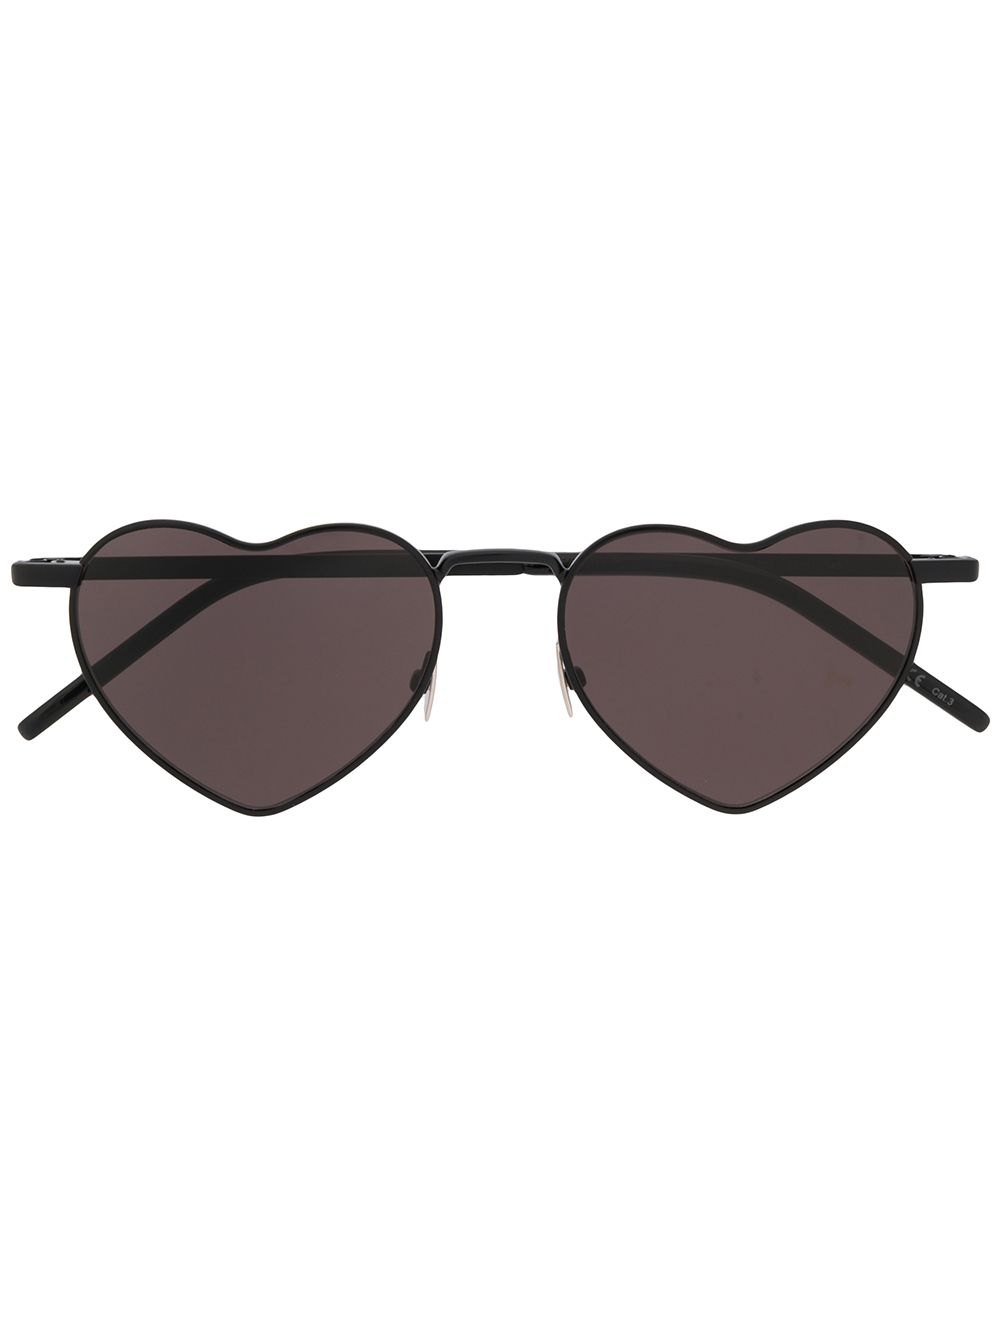 фото Saint laurent eyewear солнцезащитные очки в оправе в форме сердца